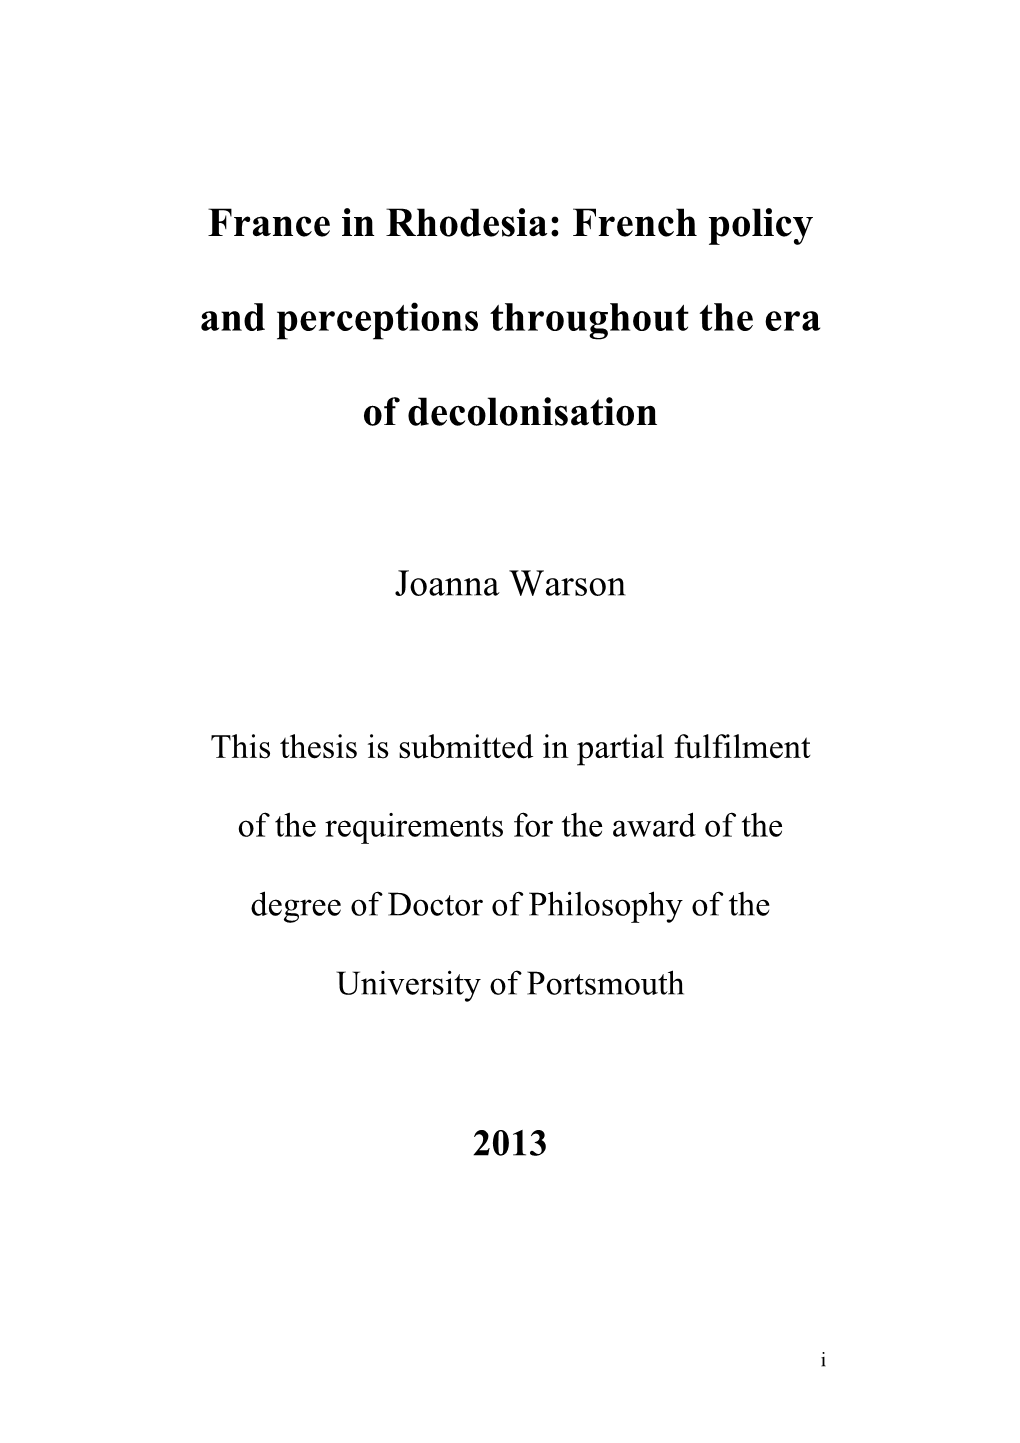 Joanna Warson Phd FINAL 2013